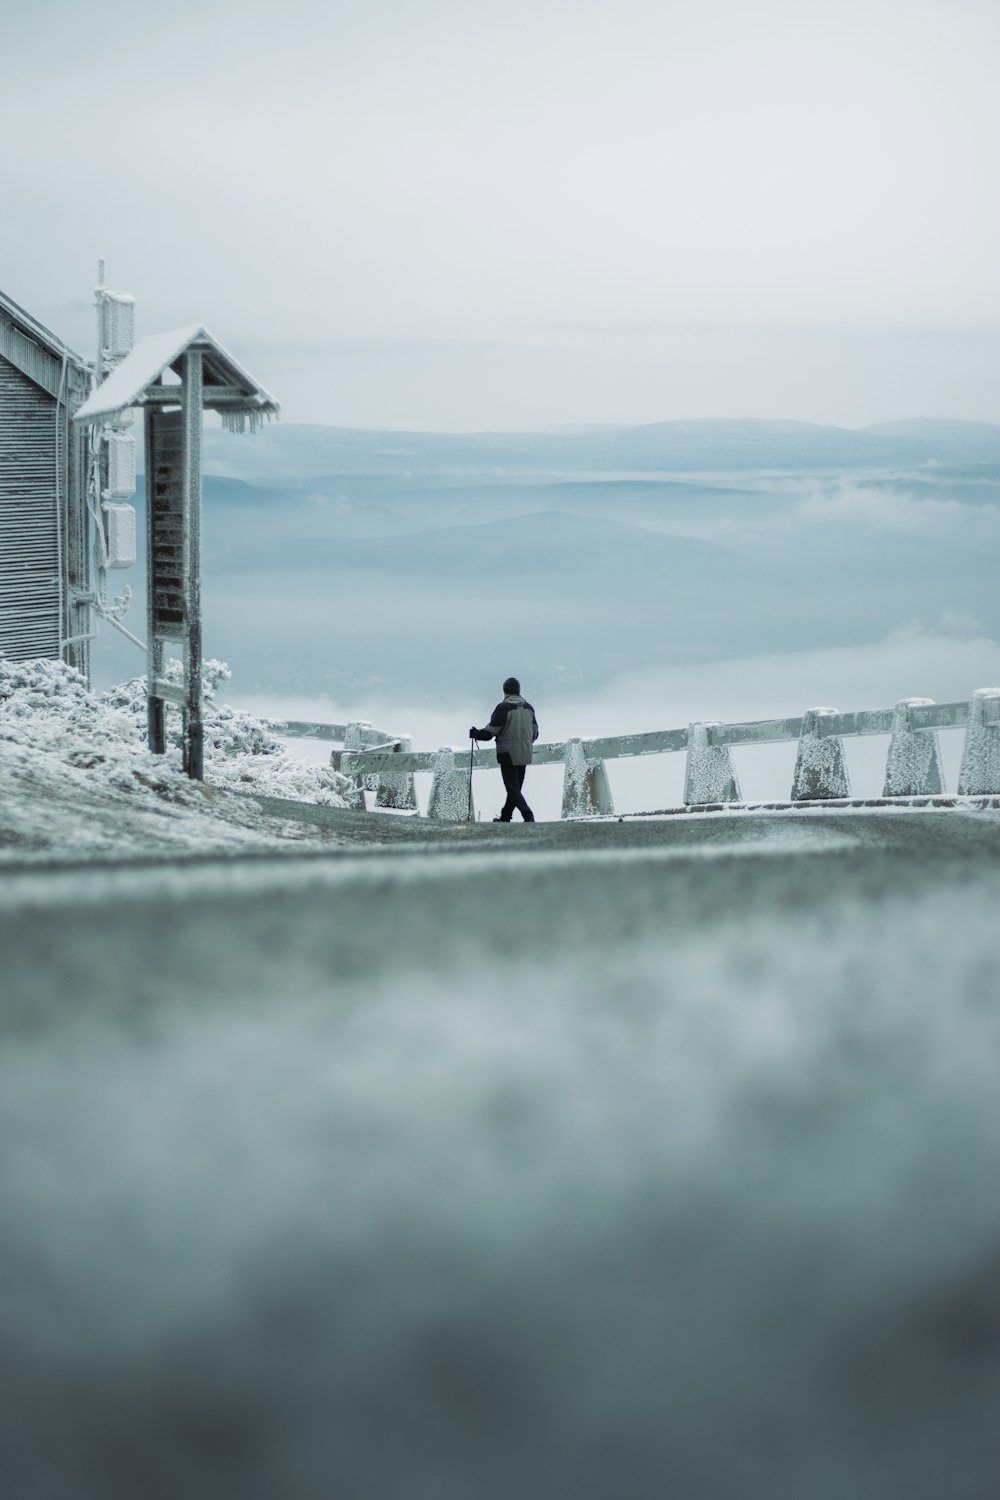 建物の横の雪に覆われた道を歩いている男